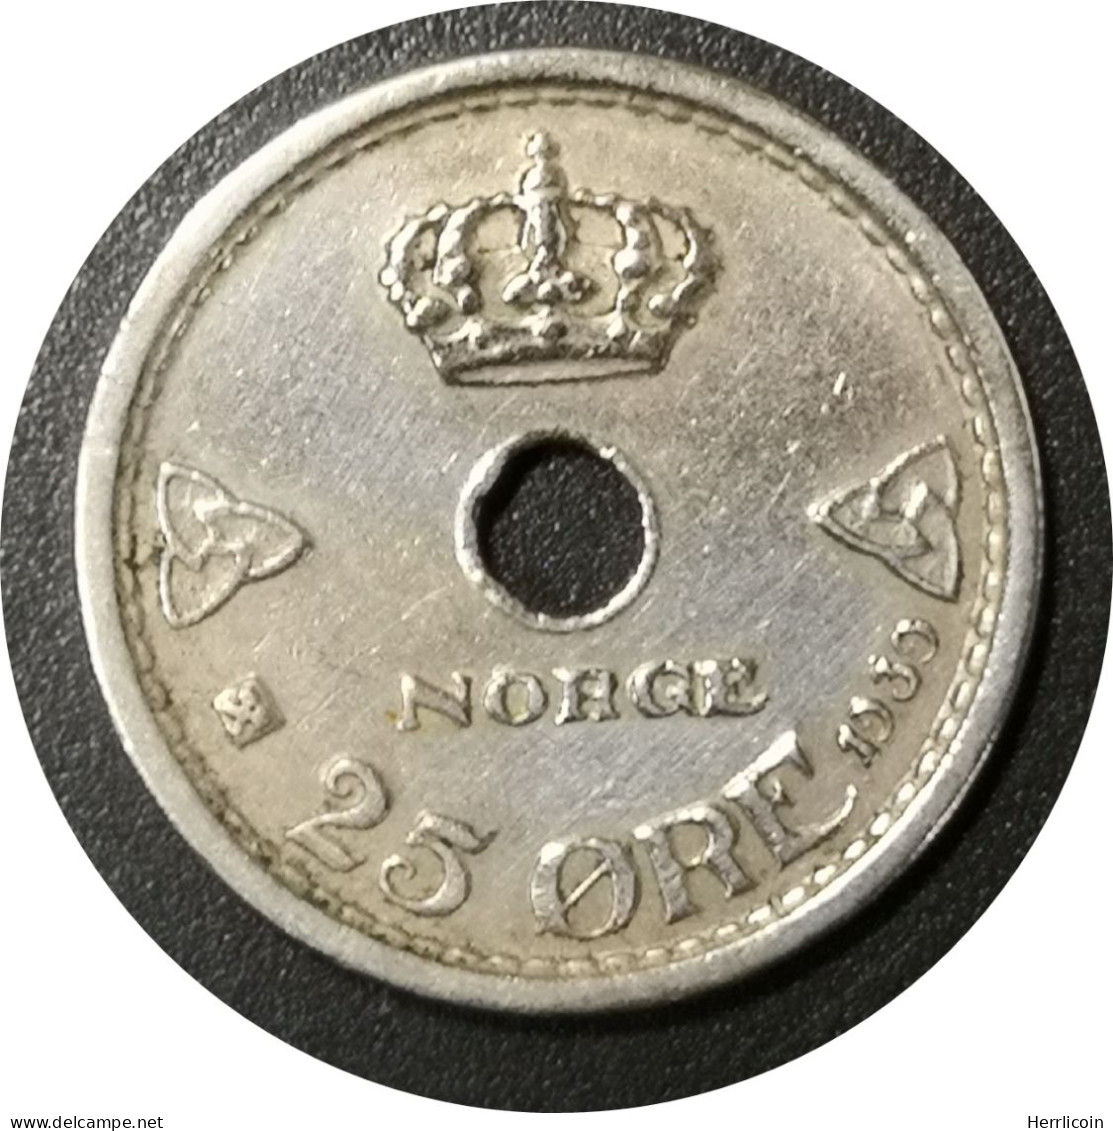 Monnaie Norvège - 1939 - 25 øre - Haakon VII - Norvegia